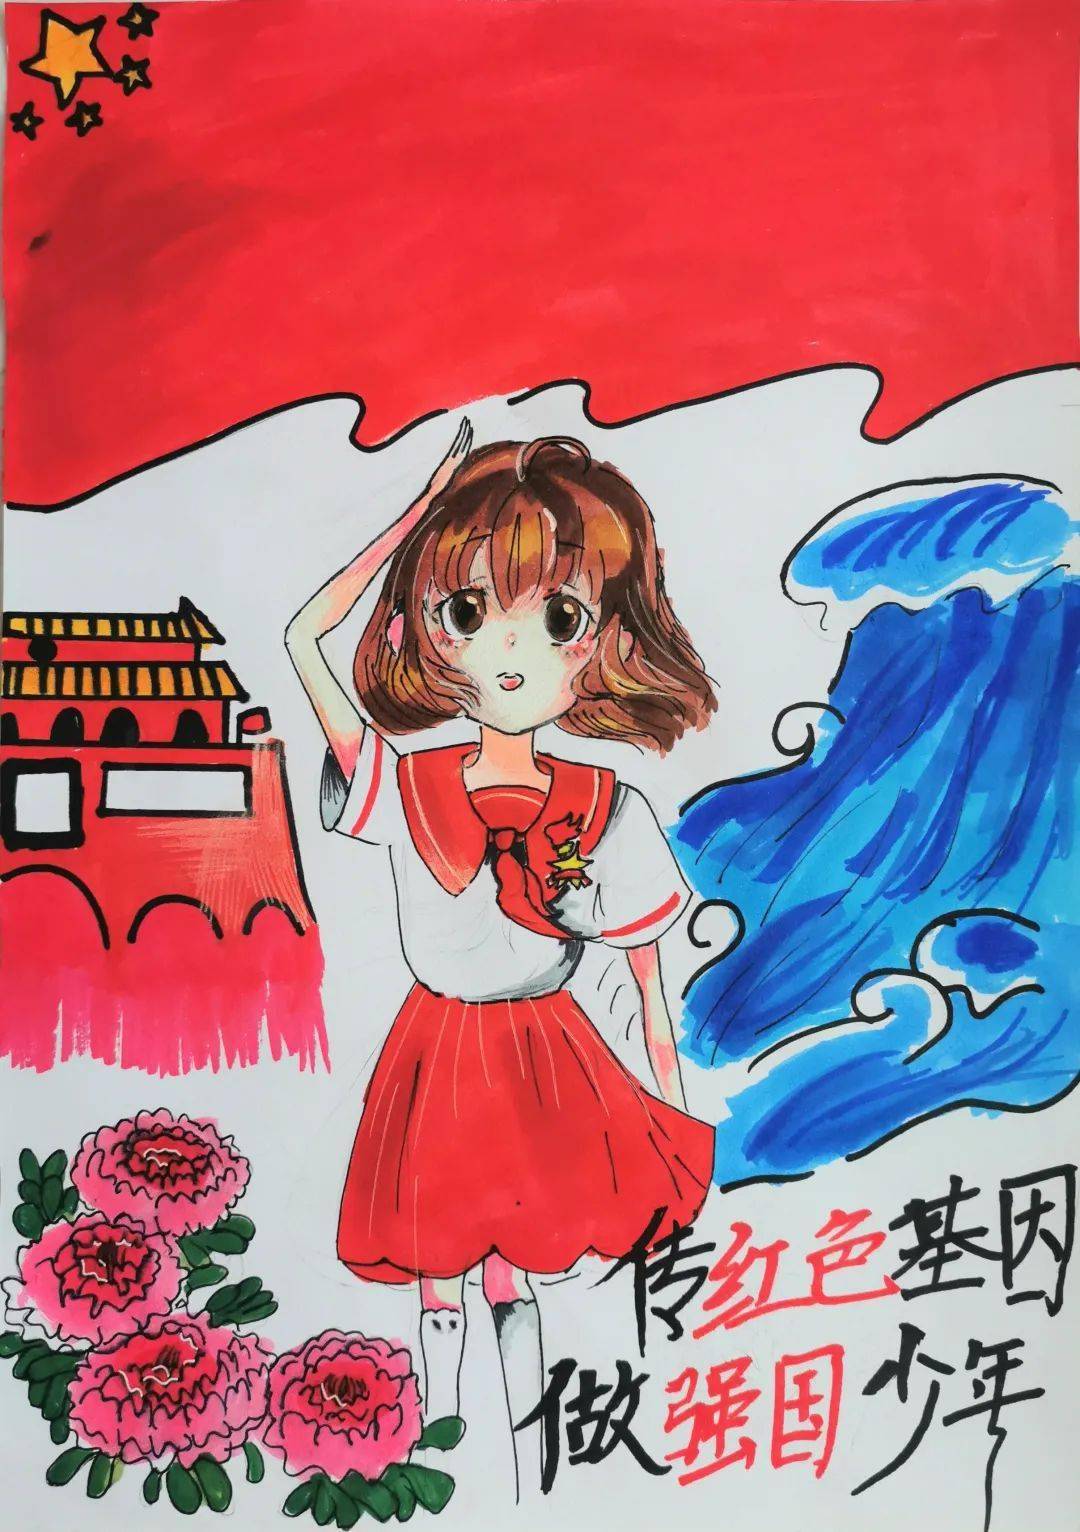 传红色基因,做强国少年——第二届艺术节主题儿童画大赛